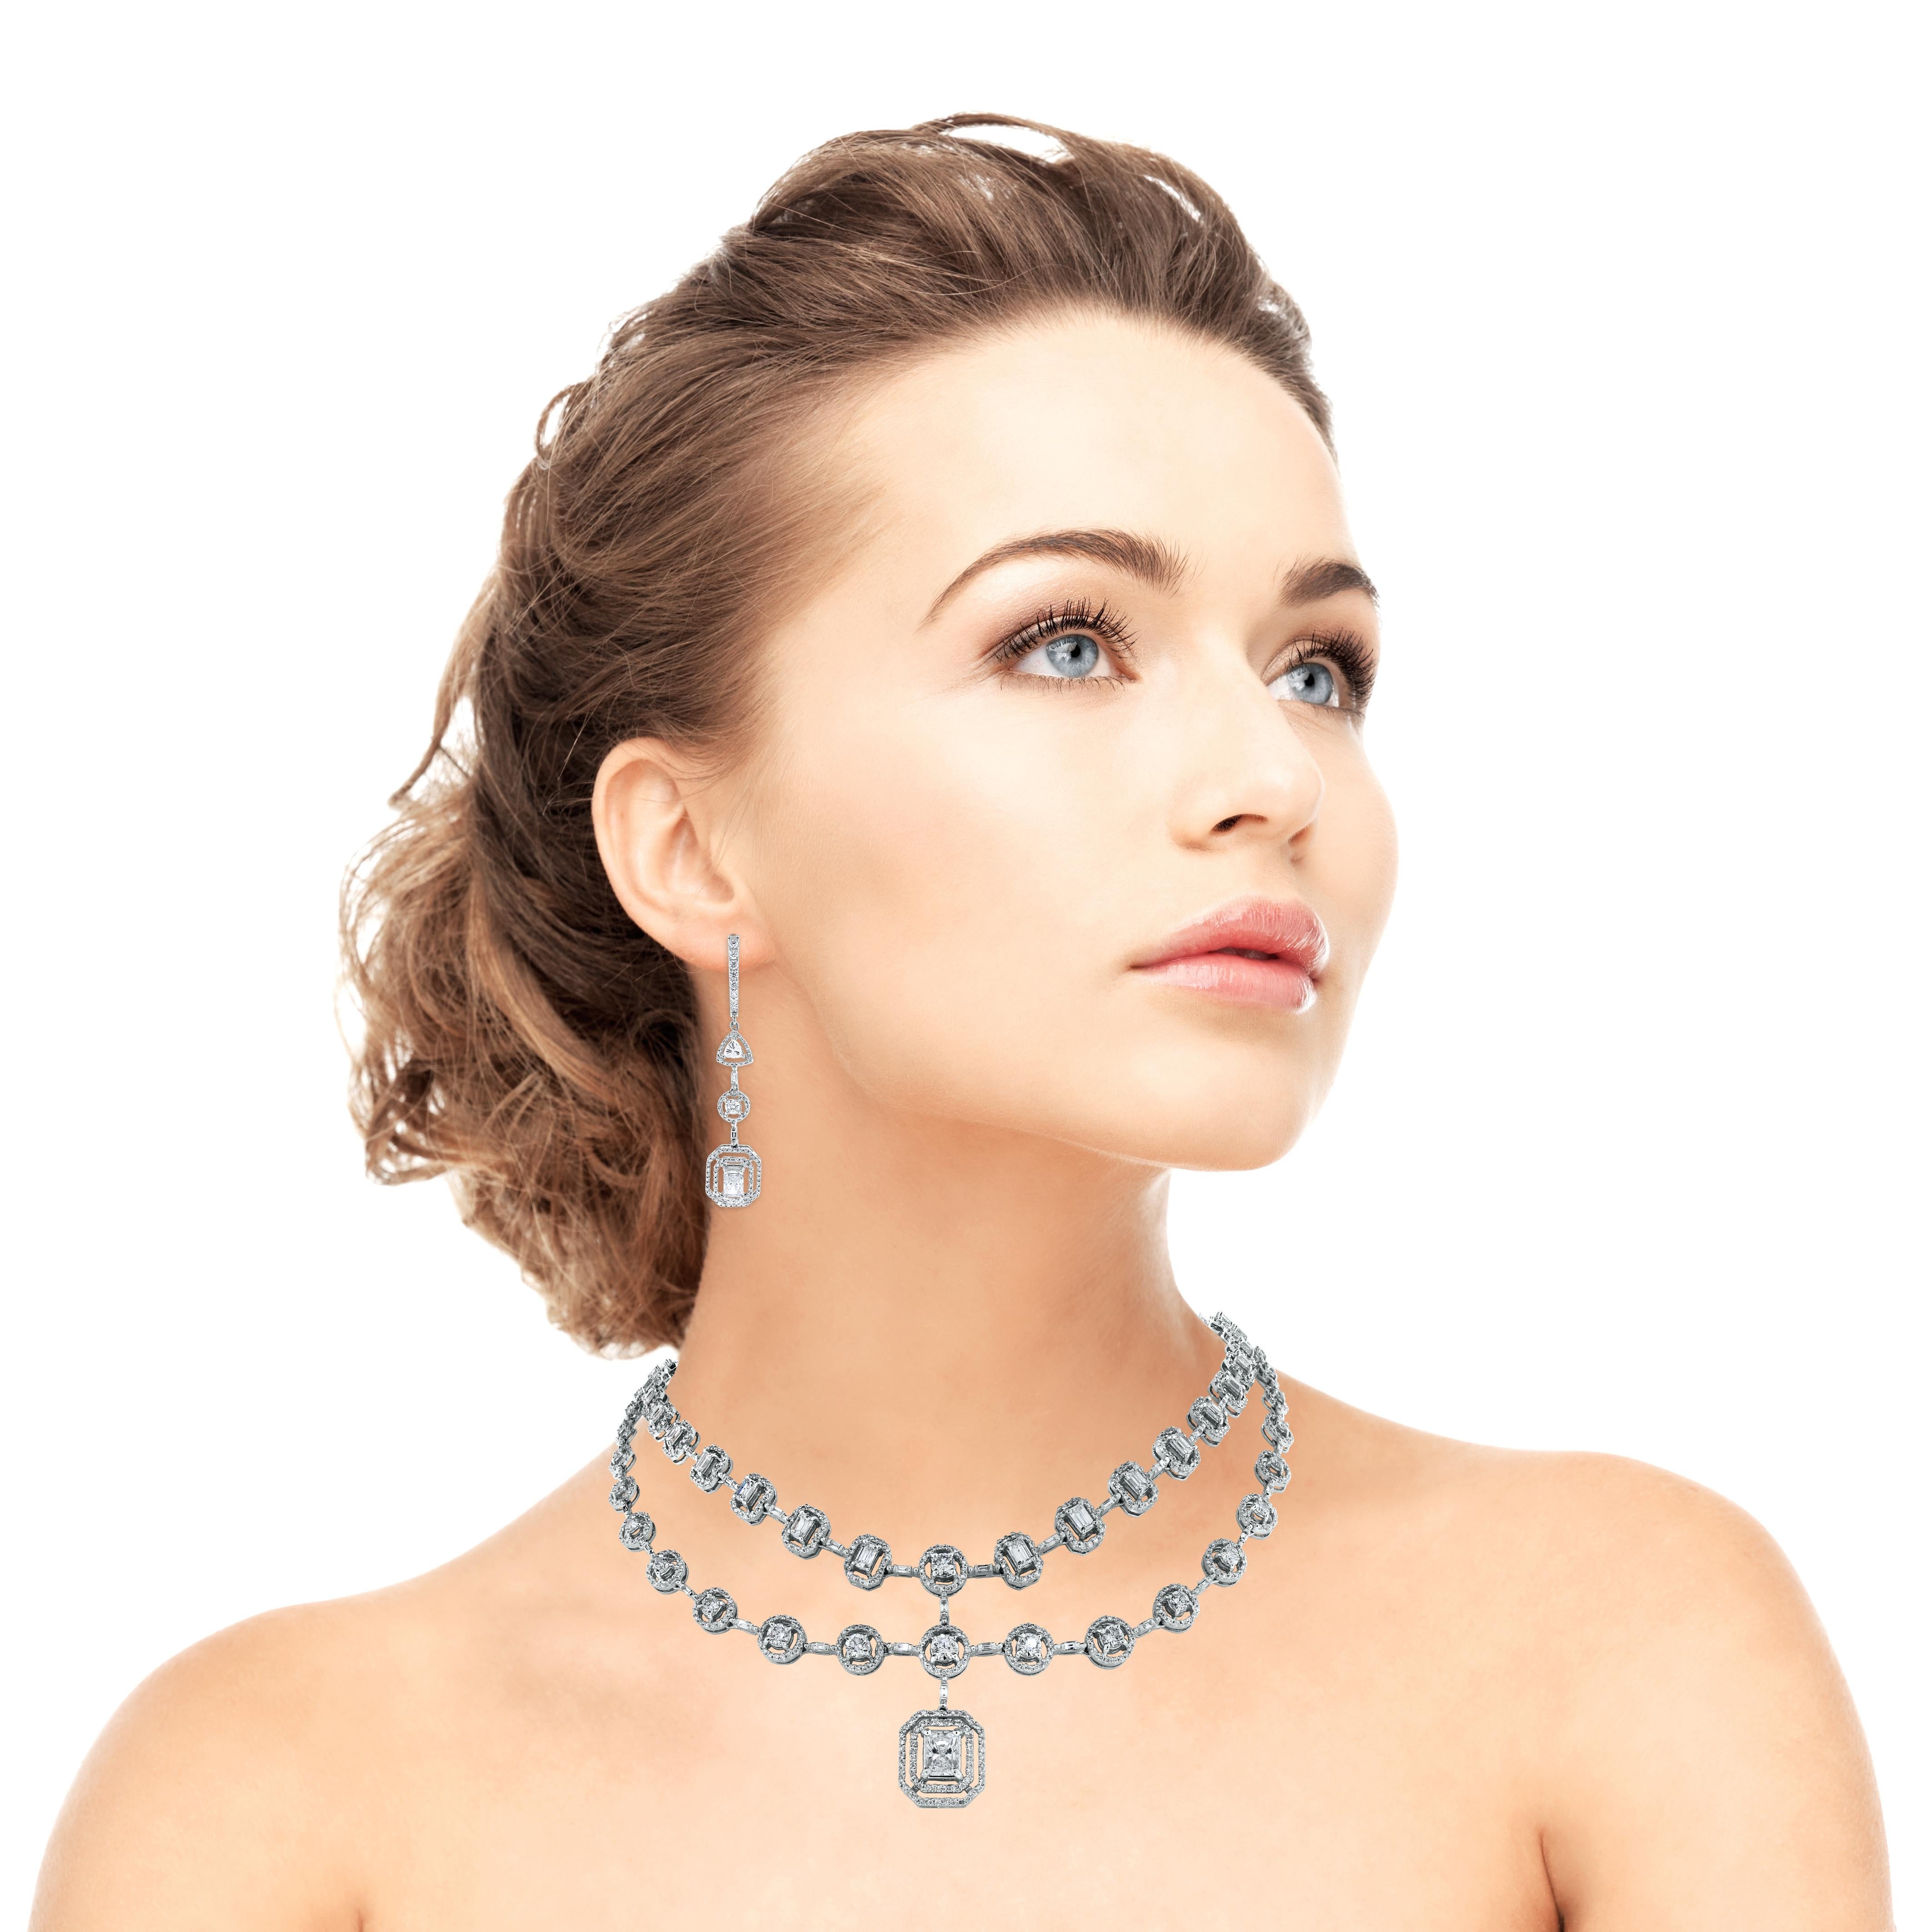 Le collier de diamants Beauvince Sansa est délicat et sensuel, mais aussi audacieux et énigmatique. Ce magnifique collier à double brin est orné en son centre d'un diamant radiant de 1,02 carat. 

Formes des diamants : Radiant, Emeraude, Baguette et